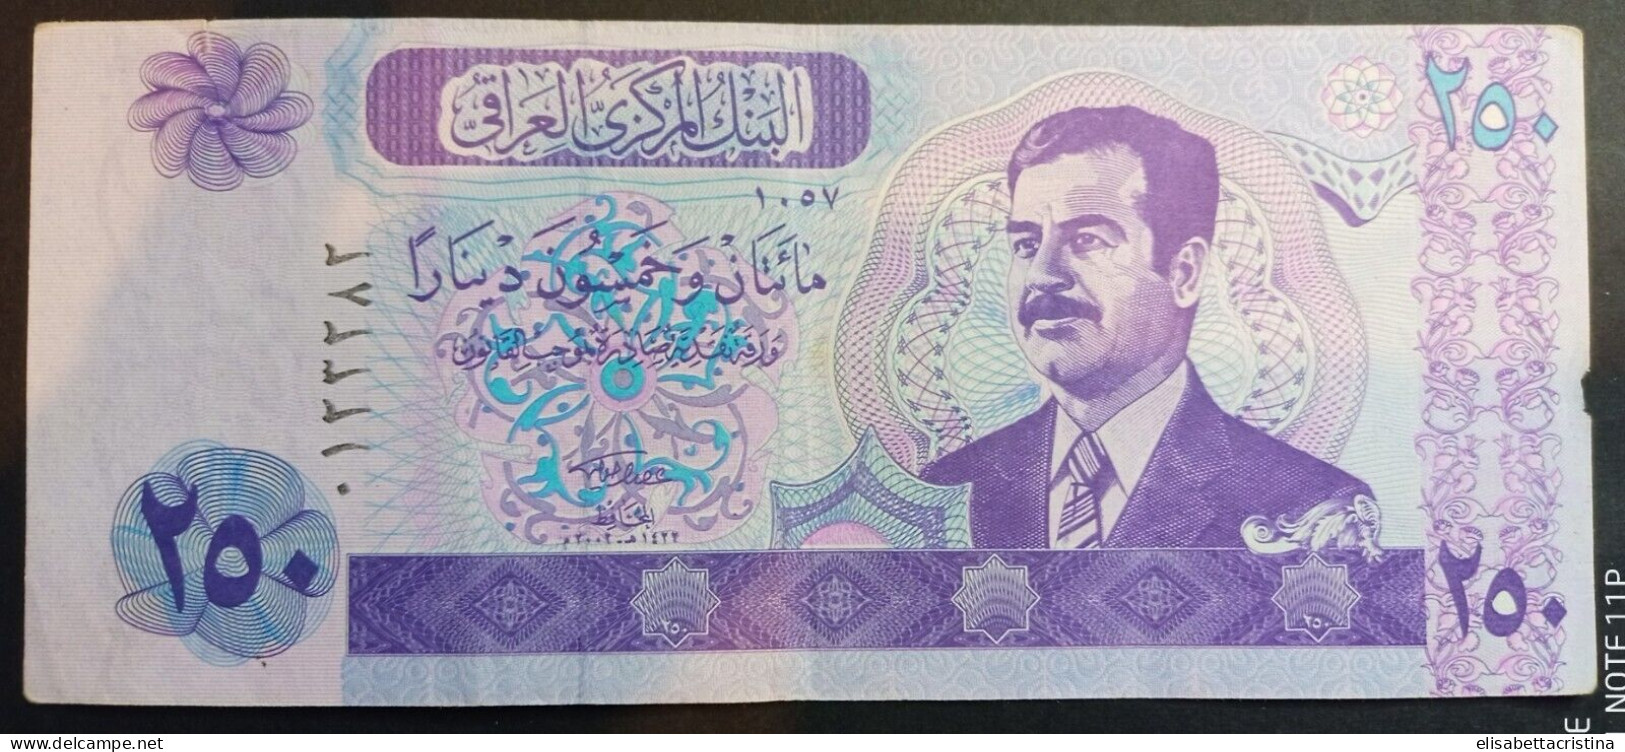 Banconota 250 Dinars 2001 Iraq - Iraq